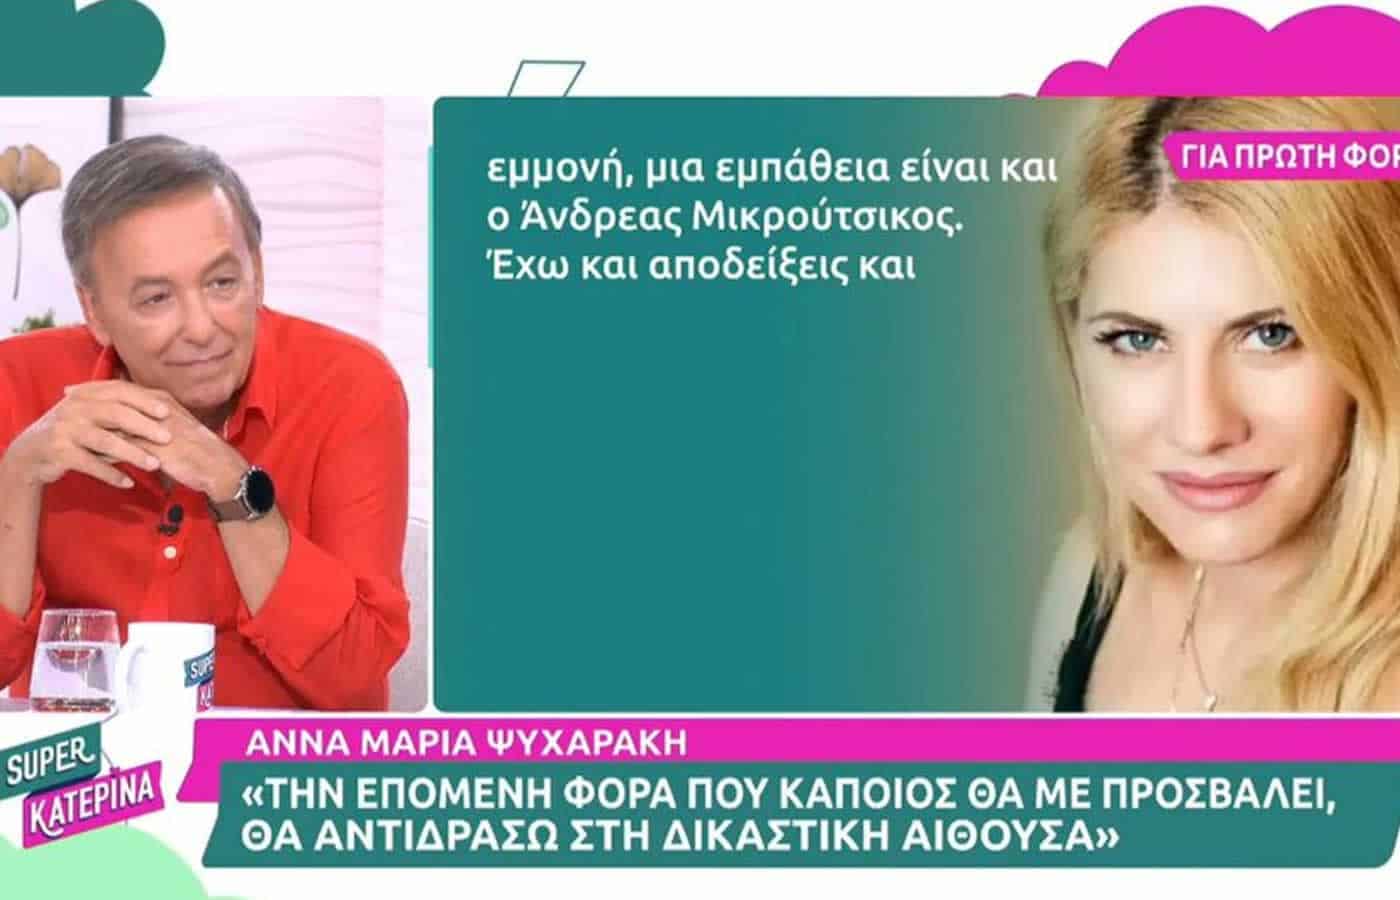 Νέα κόντρα φαίνεται ότι έχει ξεκινήσει μεταξύ της πρώην παίκτριας του Big Brother Άννας Μαρίας Ψυχαράκη η οποία προειδοποιεί για μηνύσεις